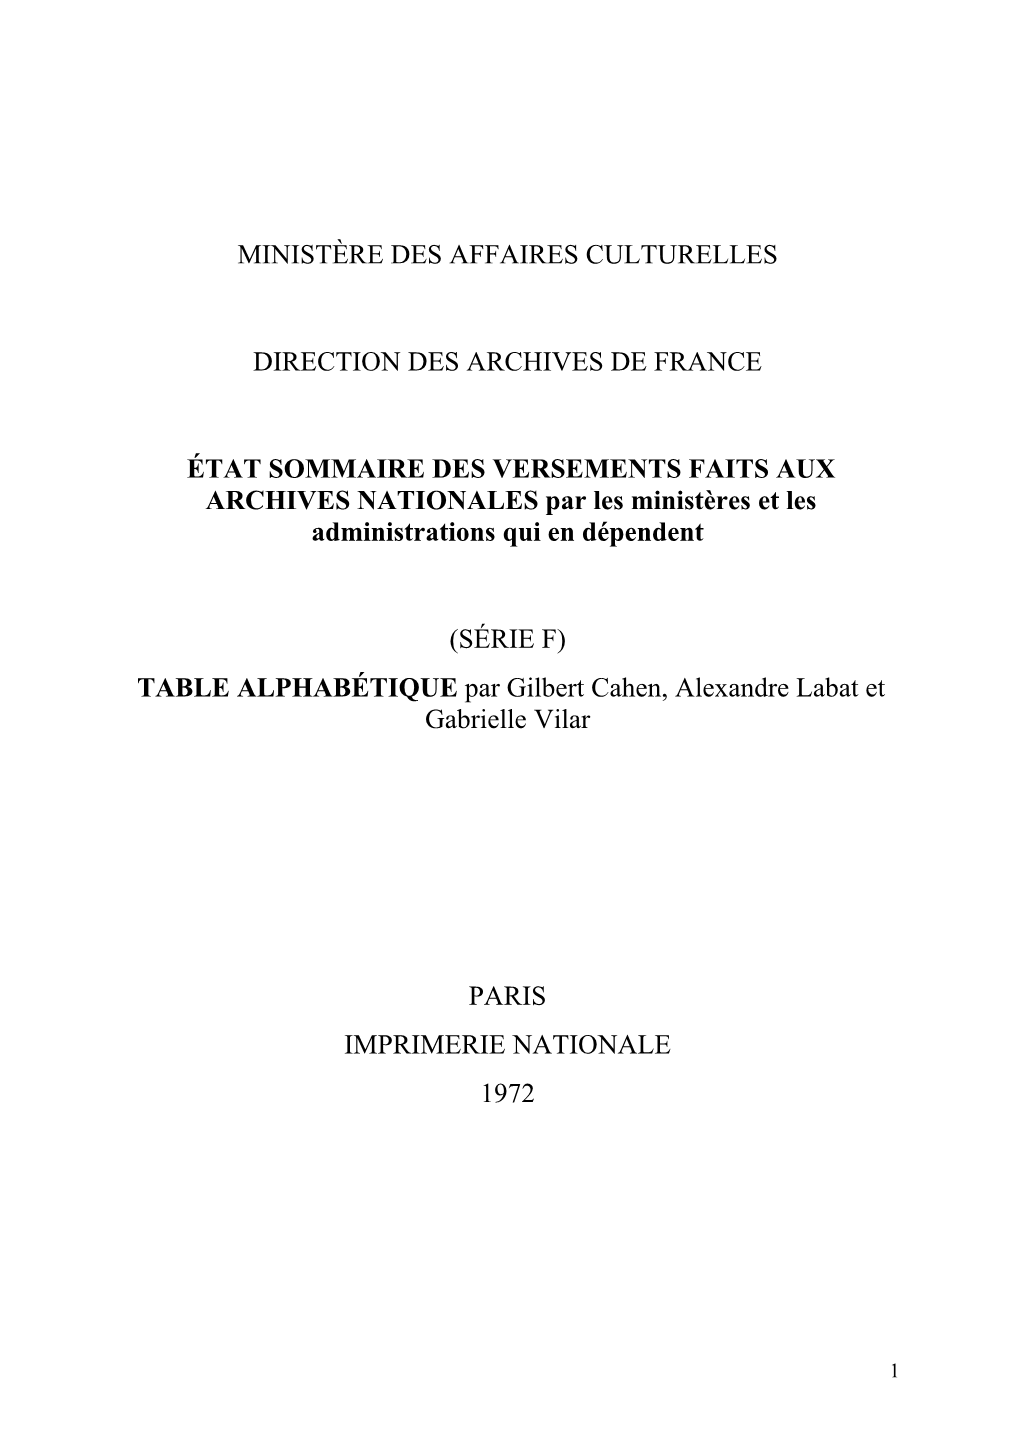 TABLE ALPHABÉTIQUE Par Gilbert Cahen, Alexandre Labat Et Gabrielle Vilar